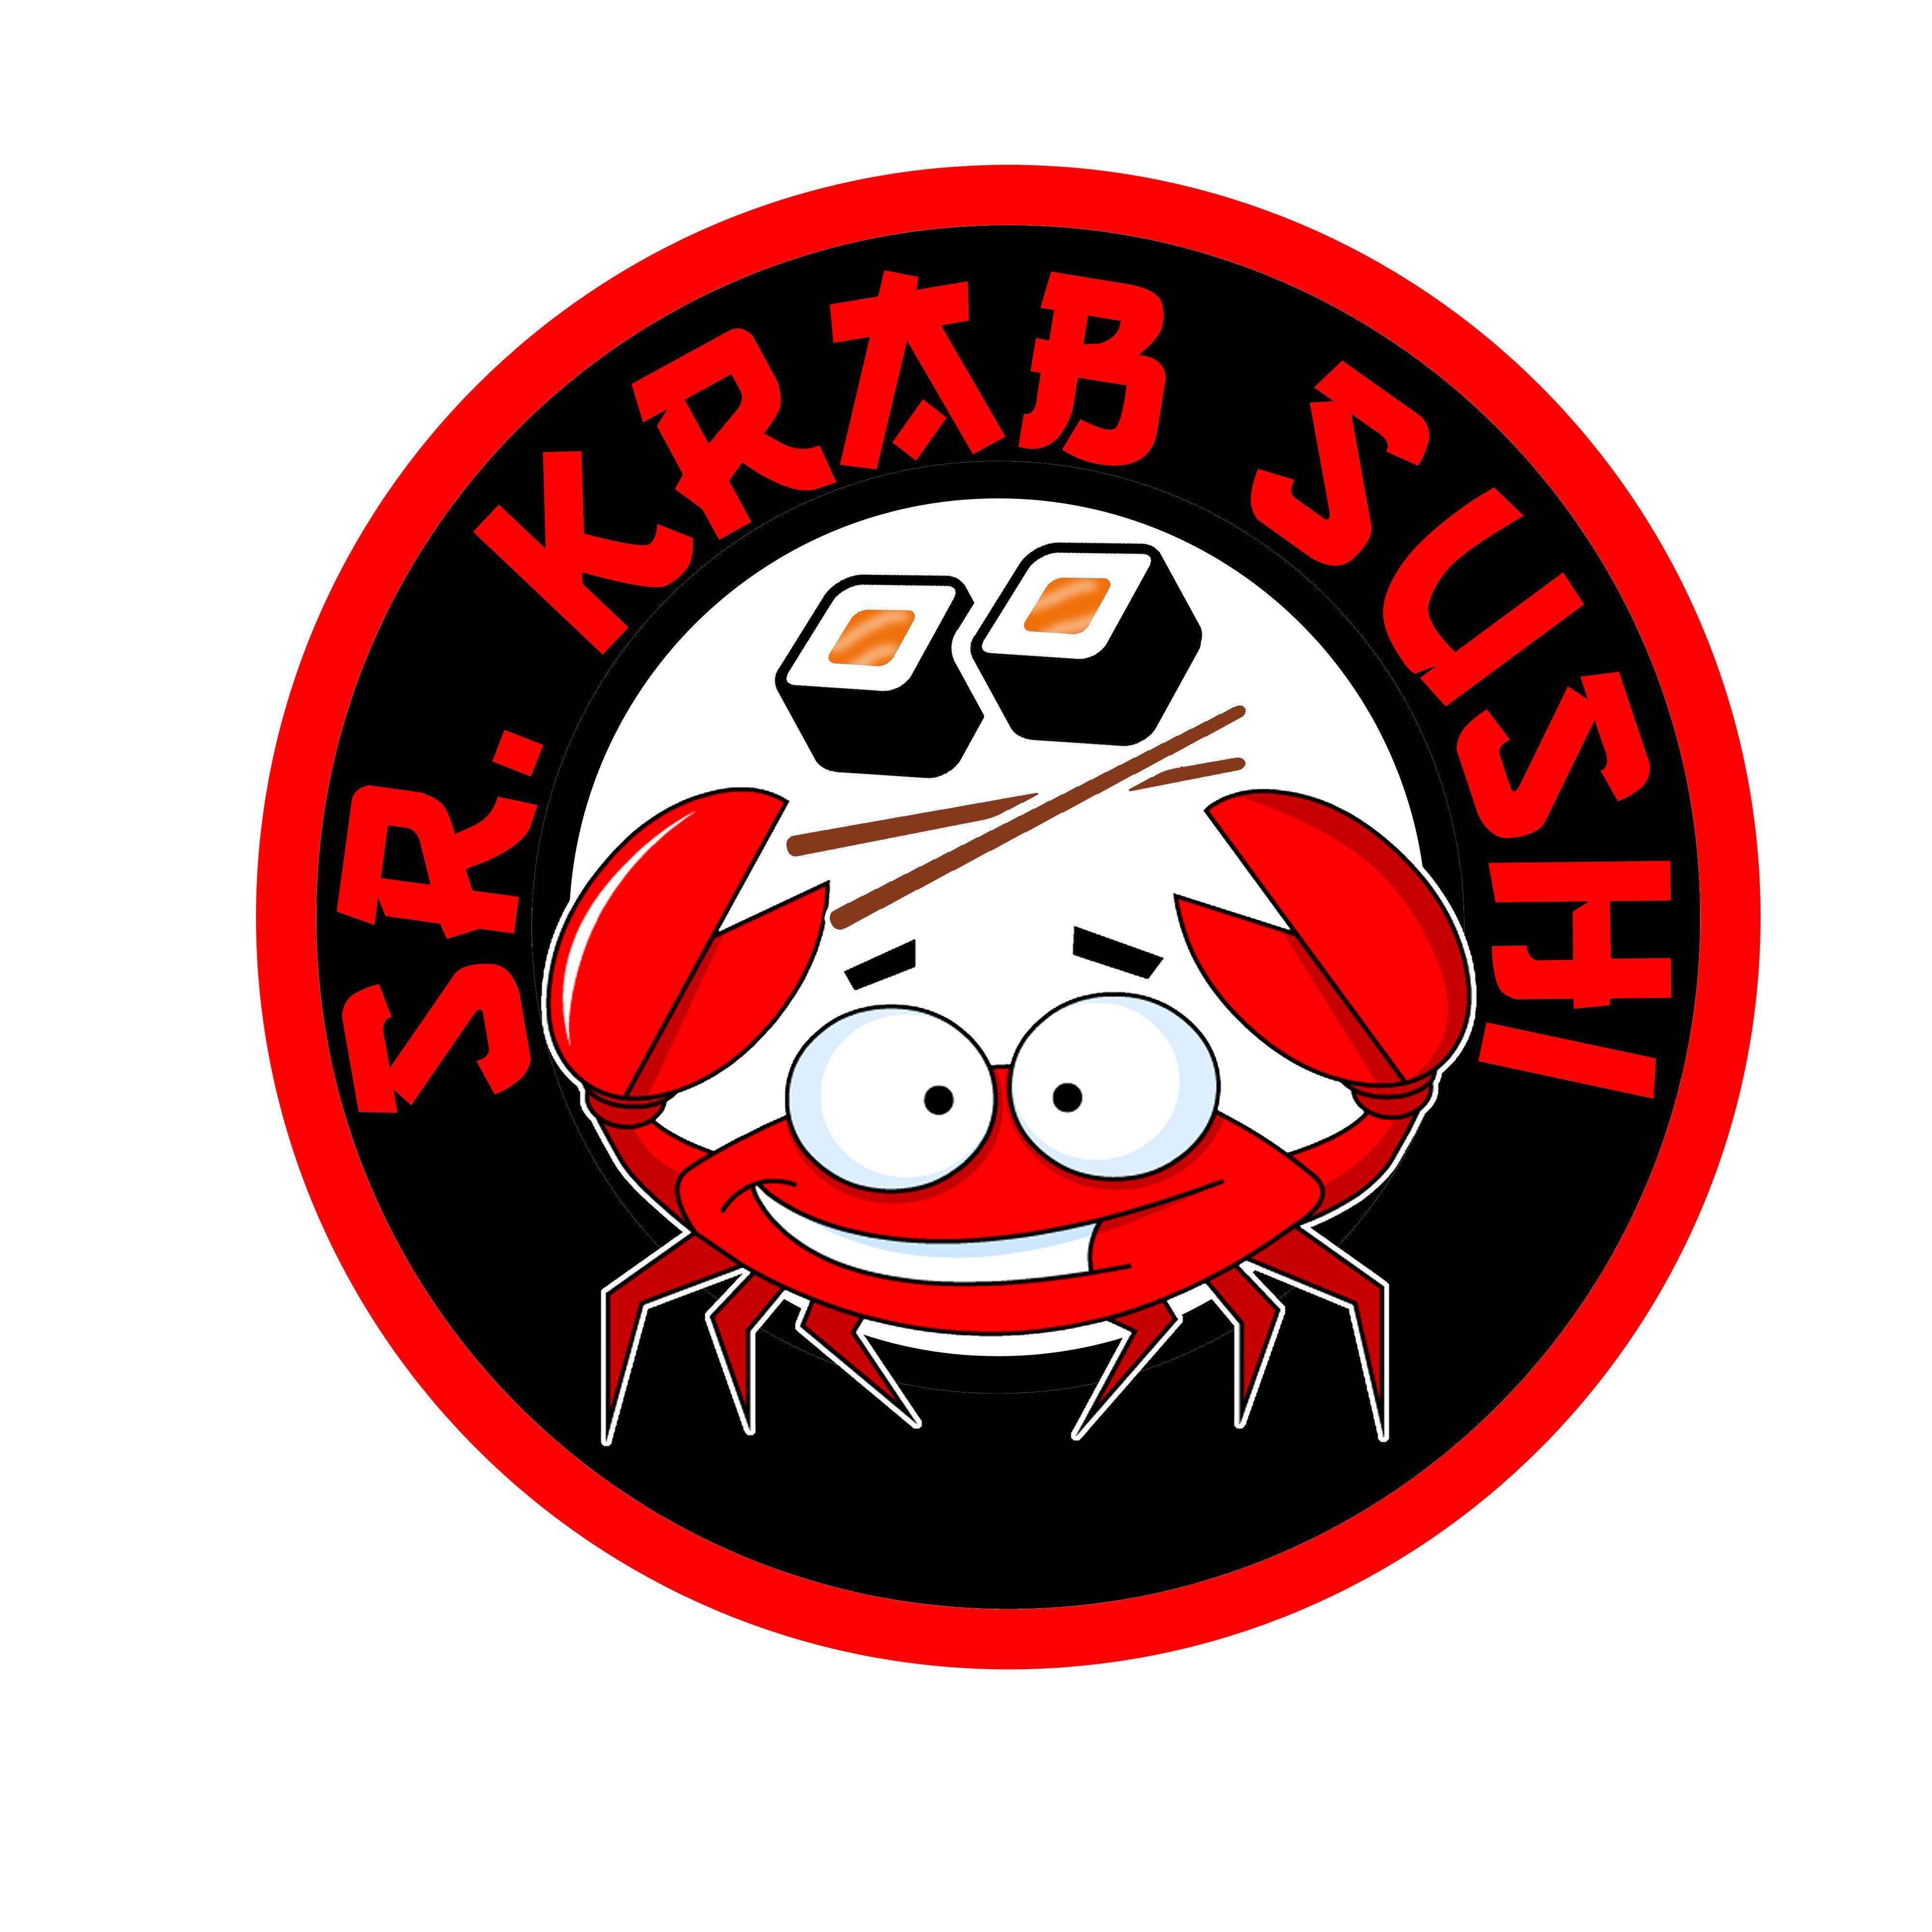 Sr. Krab Sushi